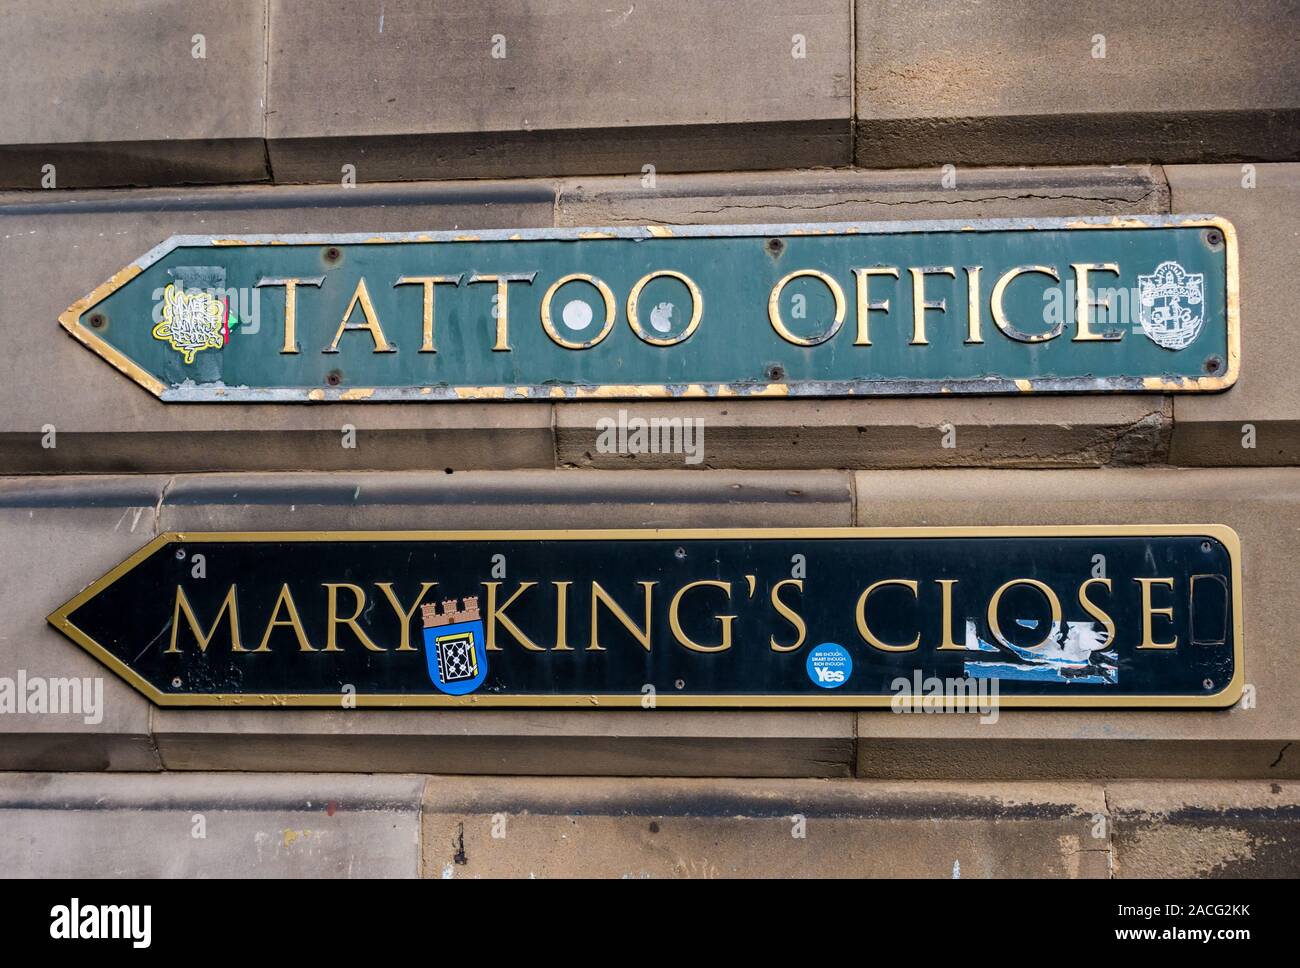 Anzeichen für Mary King's Close & Military Tattoo Office auf Sandsteinmauer, Edinburgh, Schottland, Großbritannien Stockfoto